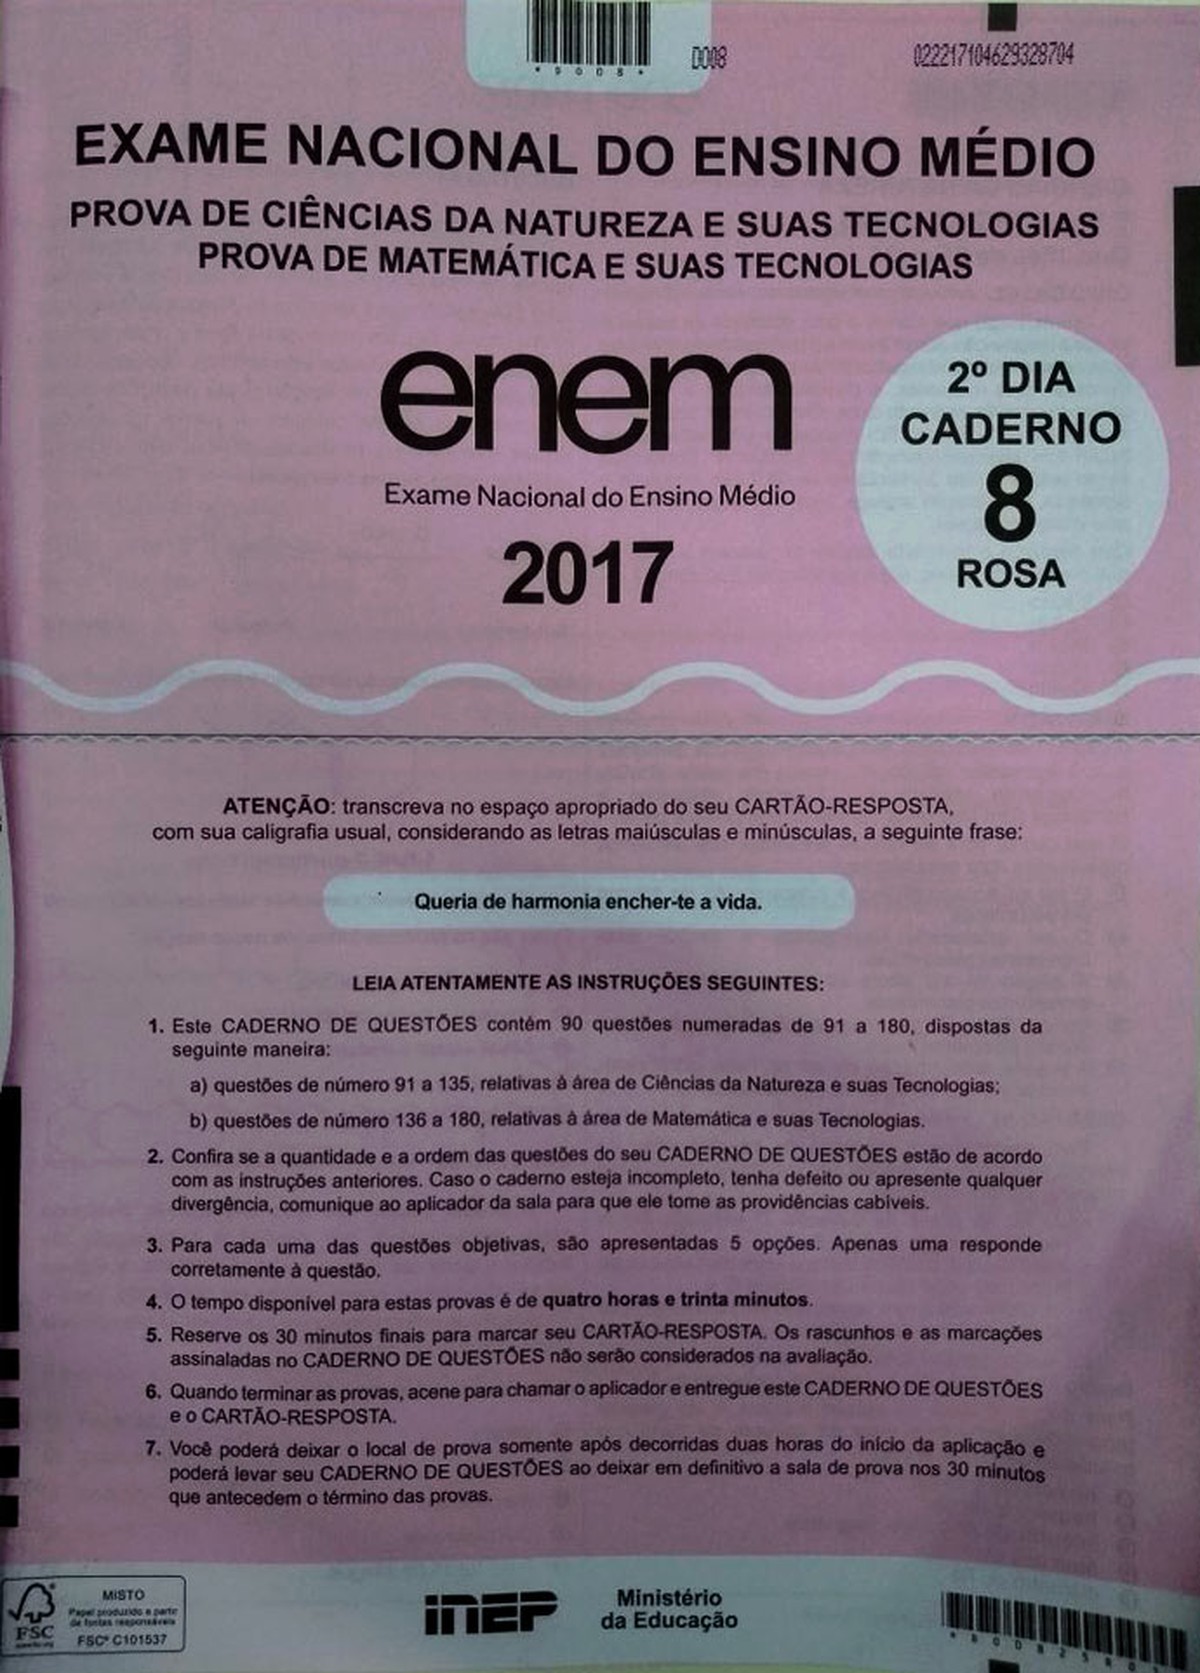 Resultado ENEM - Confira o resultado da sua nota enem 2017